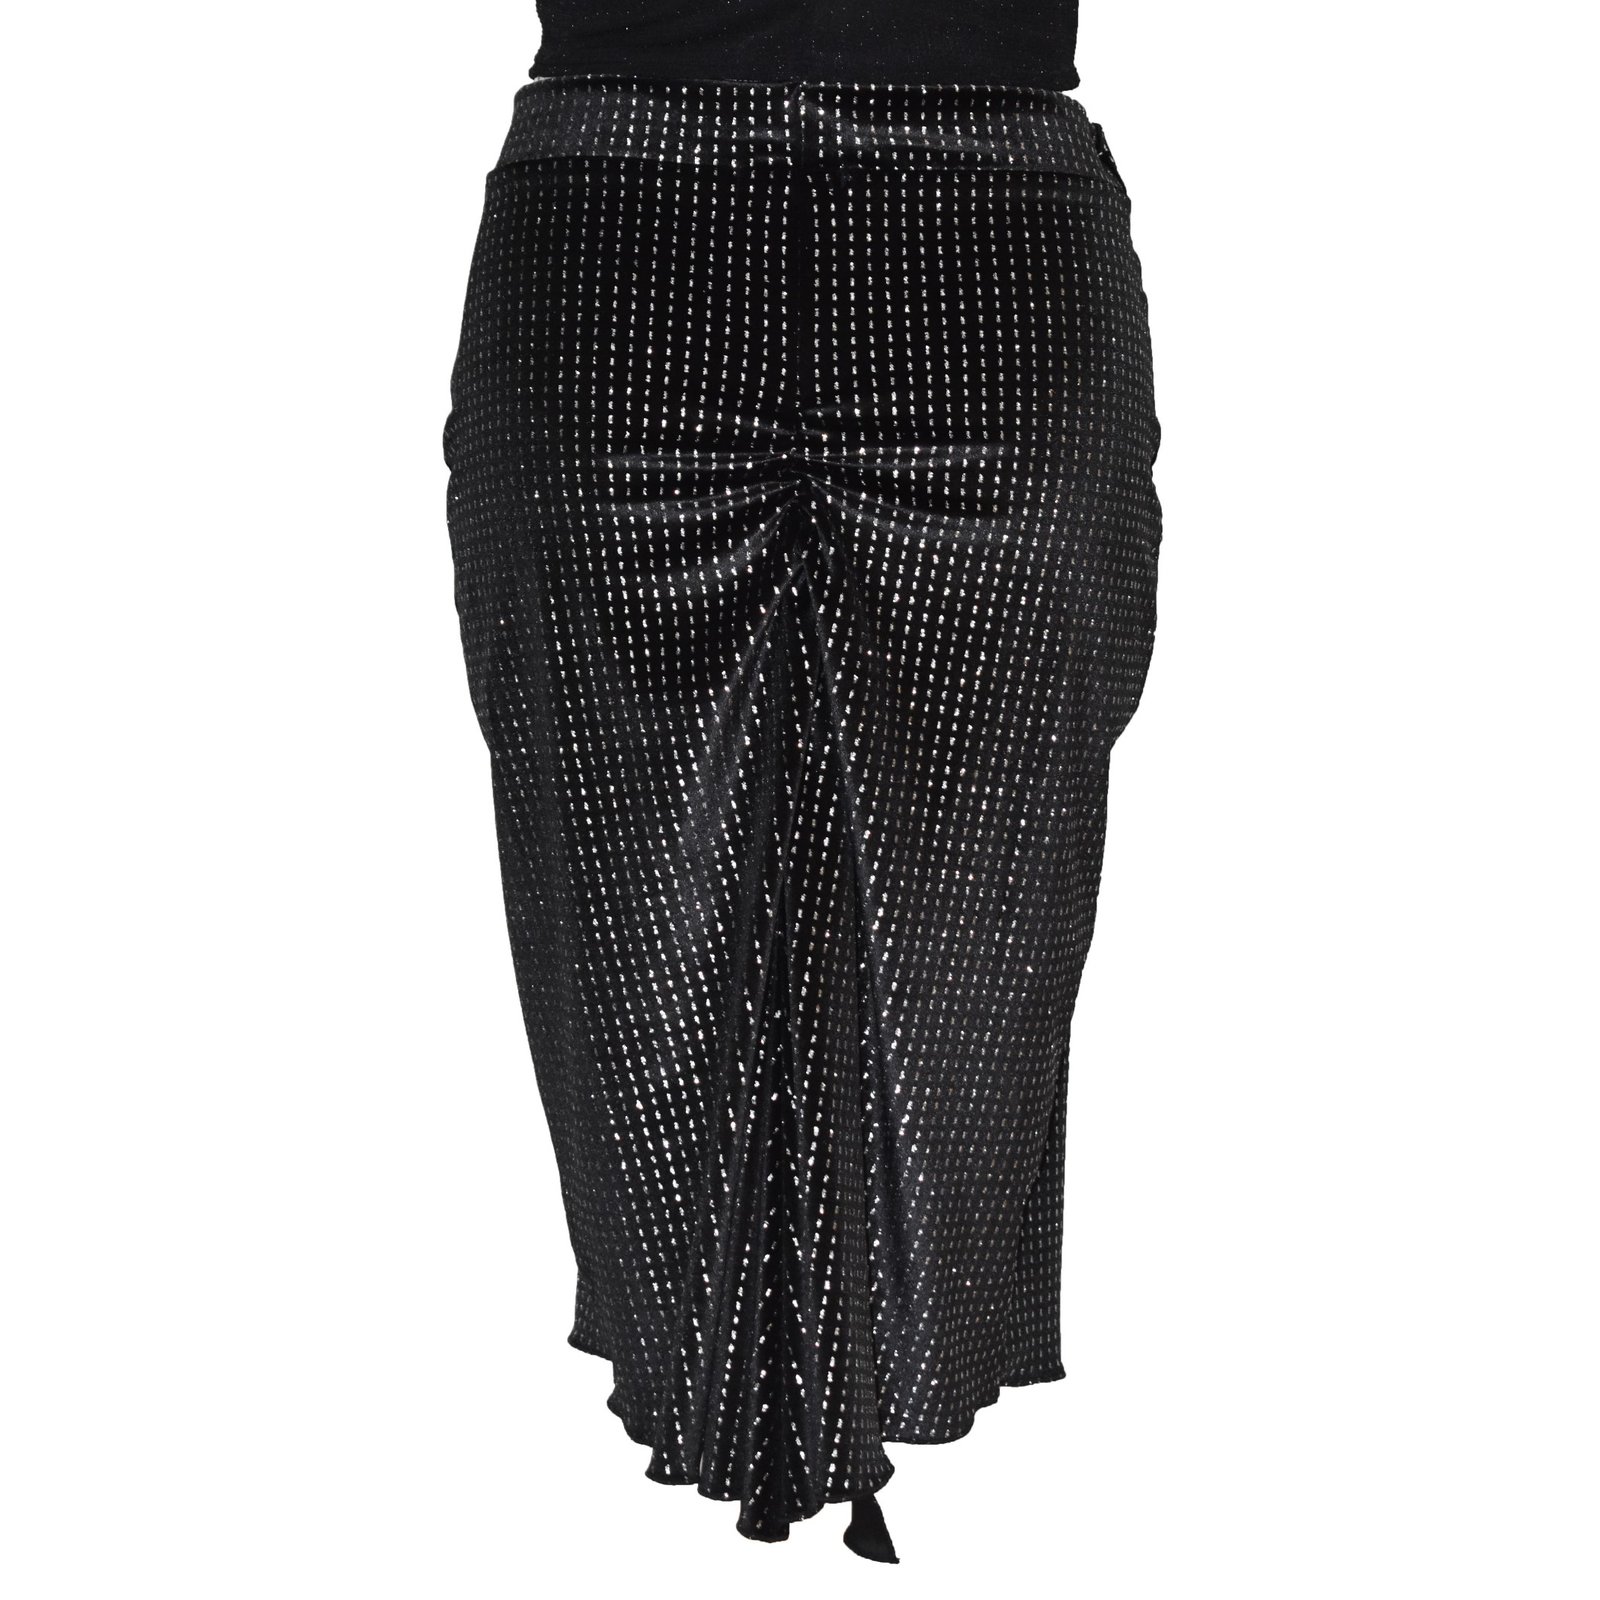 Black velvet argentine tango skirt S0050 - AmoTango